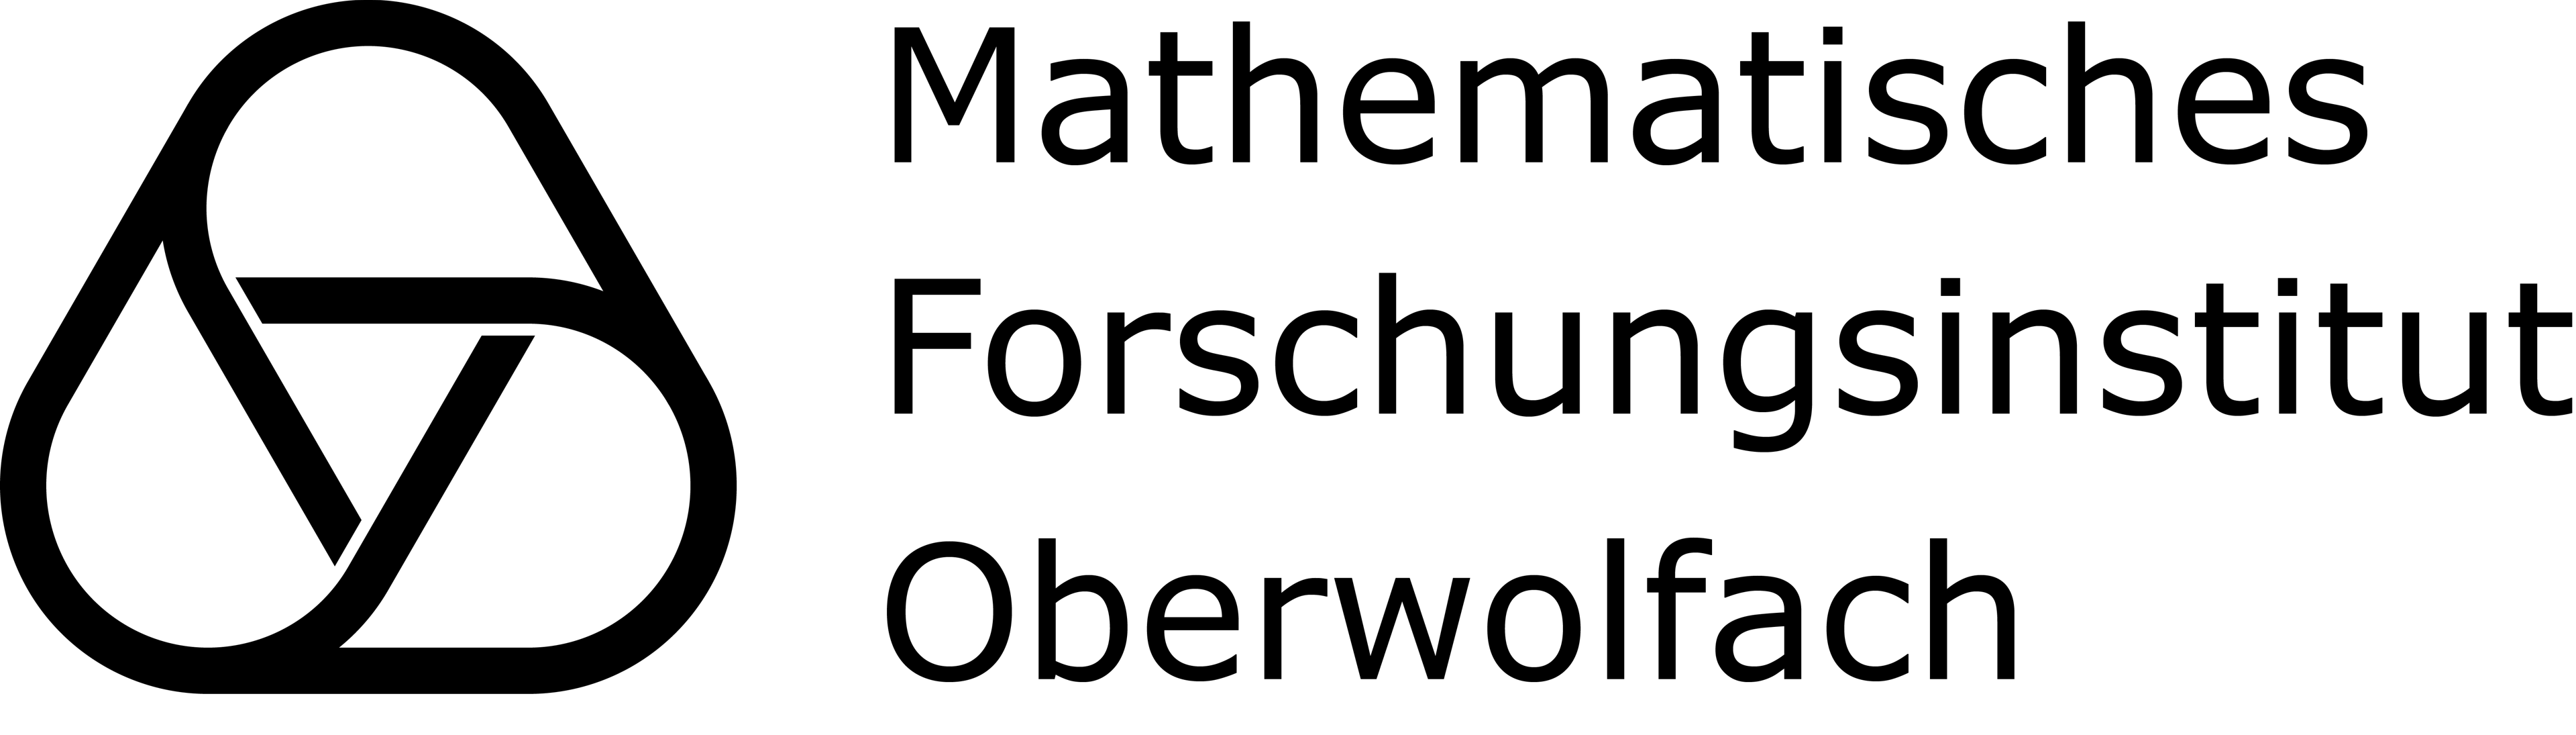 logo of "Mathematisches Forschungsinstitut Oberwolfach "